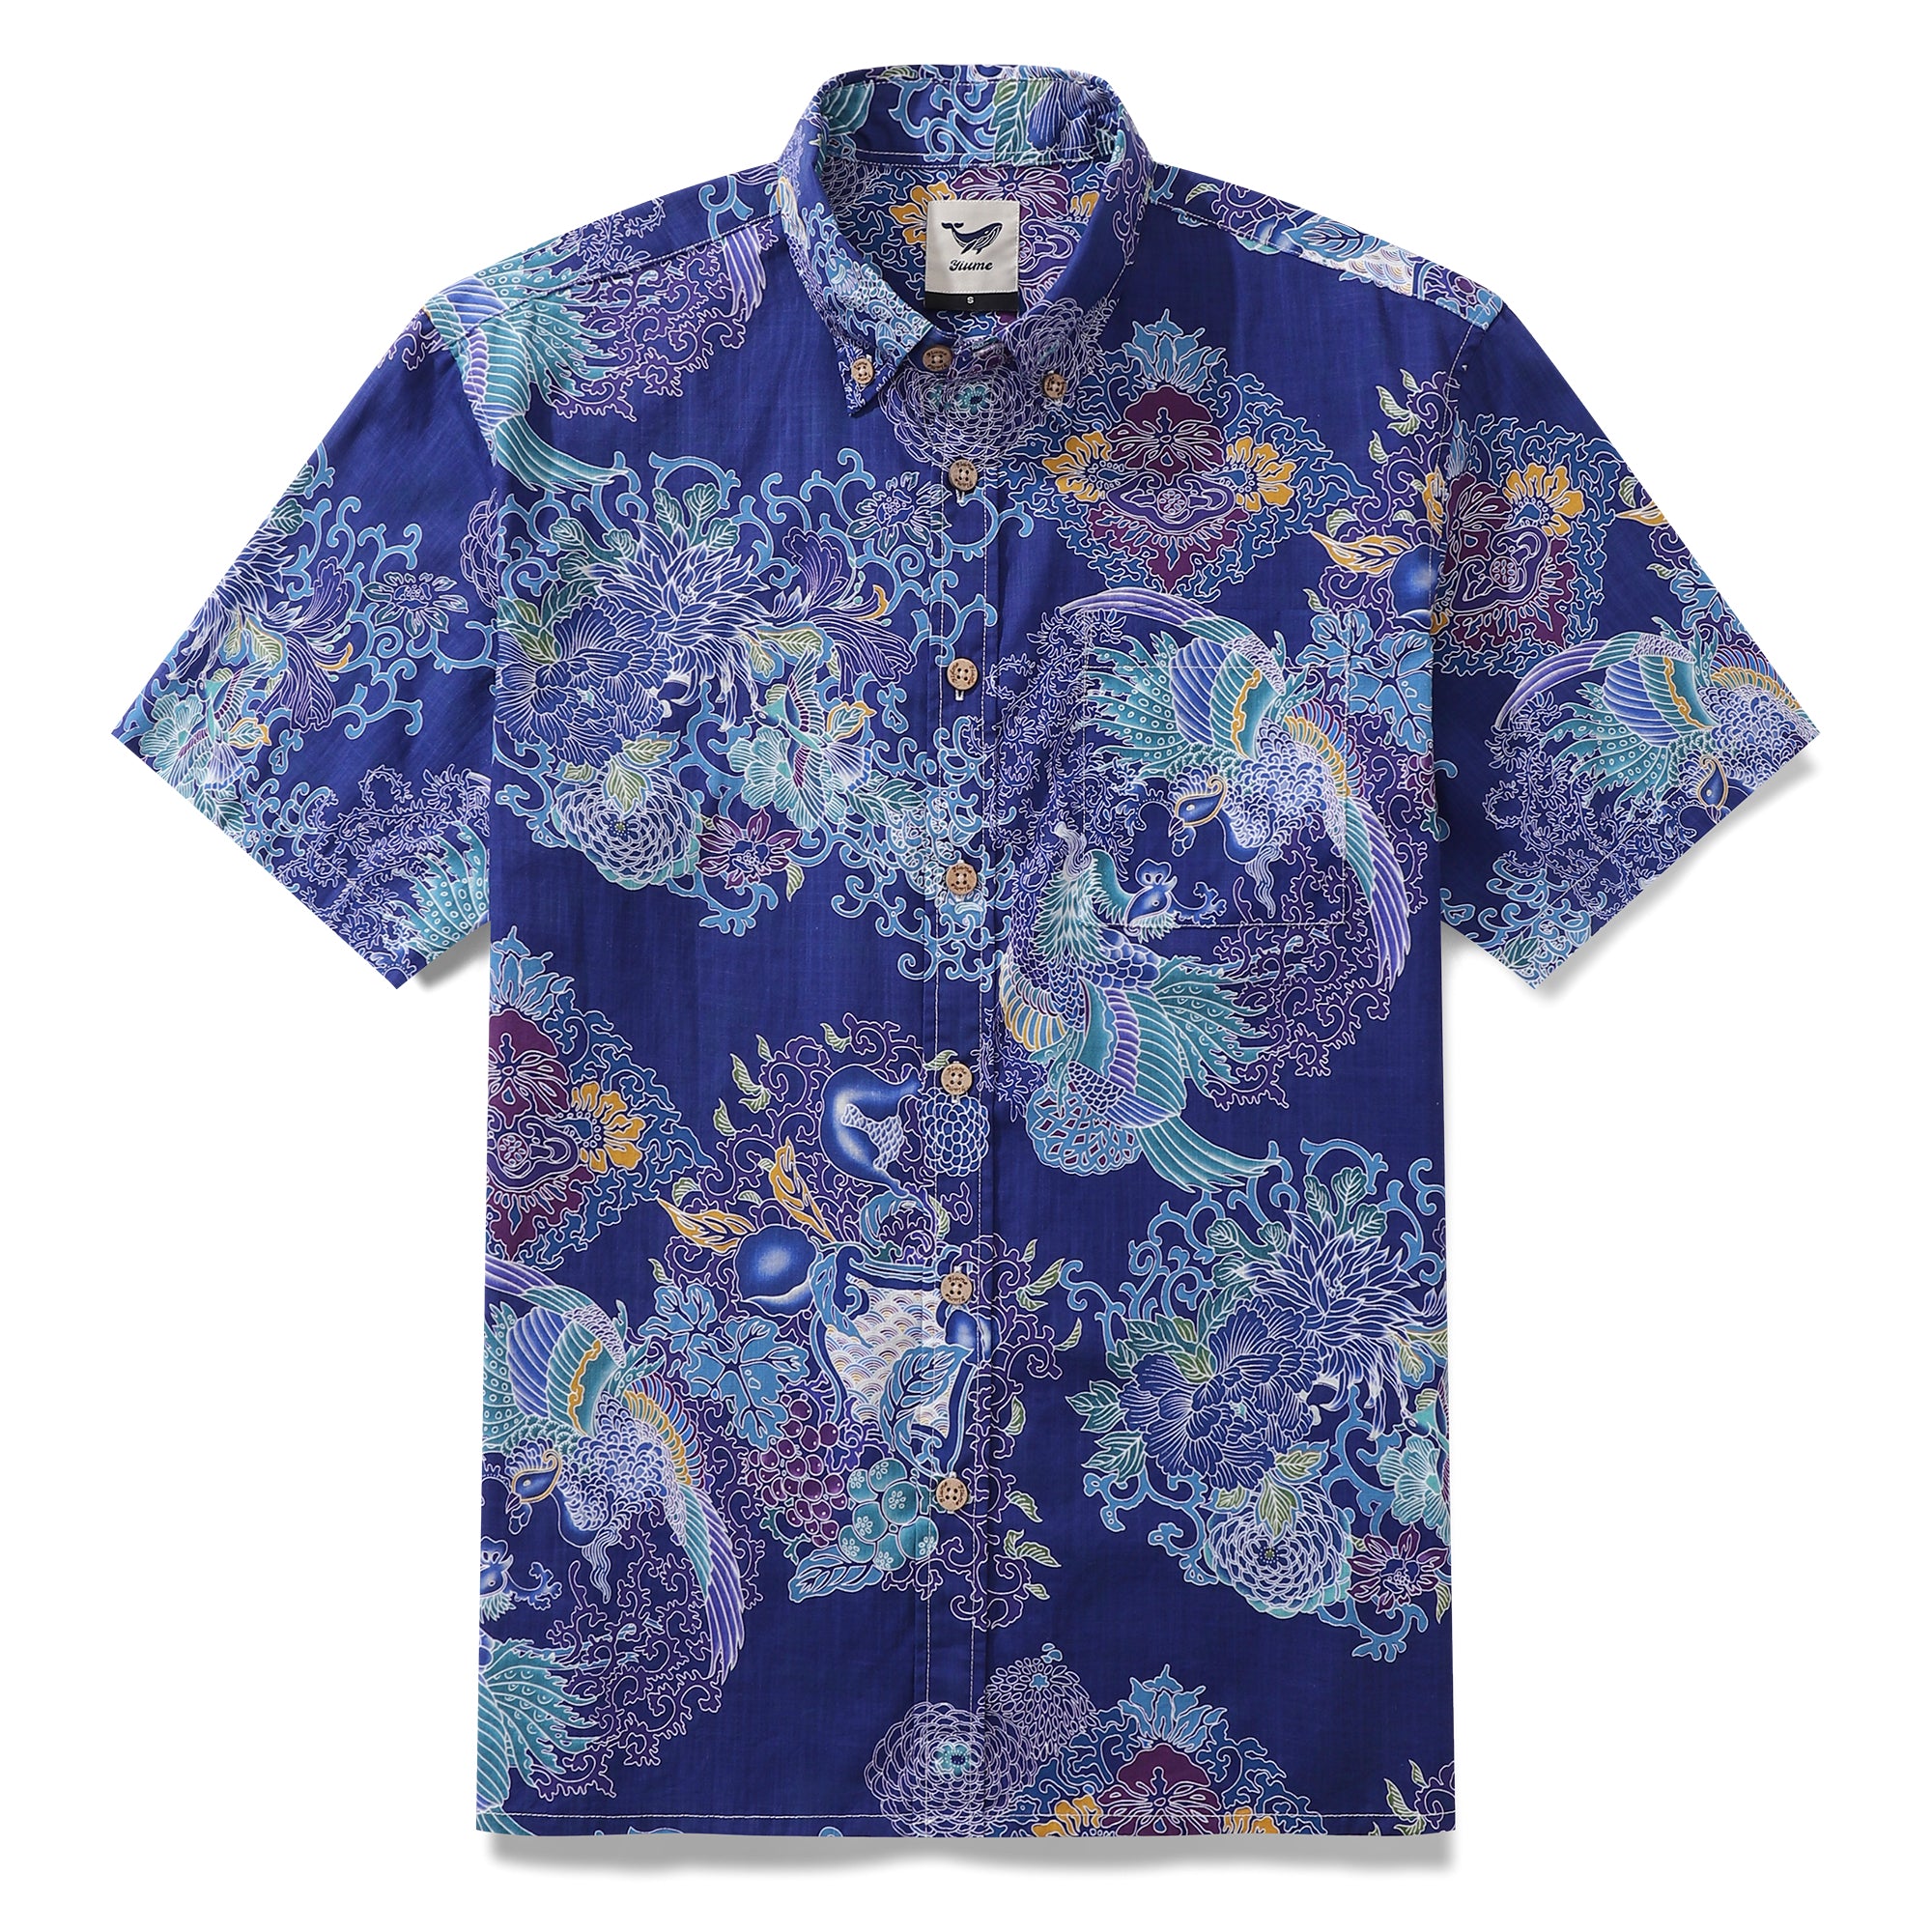 アロハシャツ メンズ フェニックス ピクチャー プリント シャツ コットン 100% - ブルー